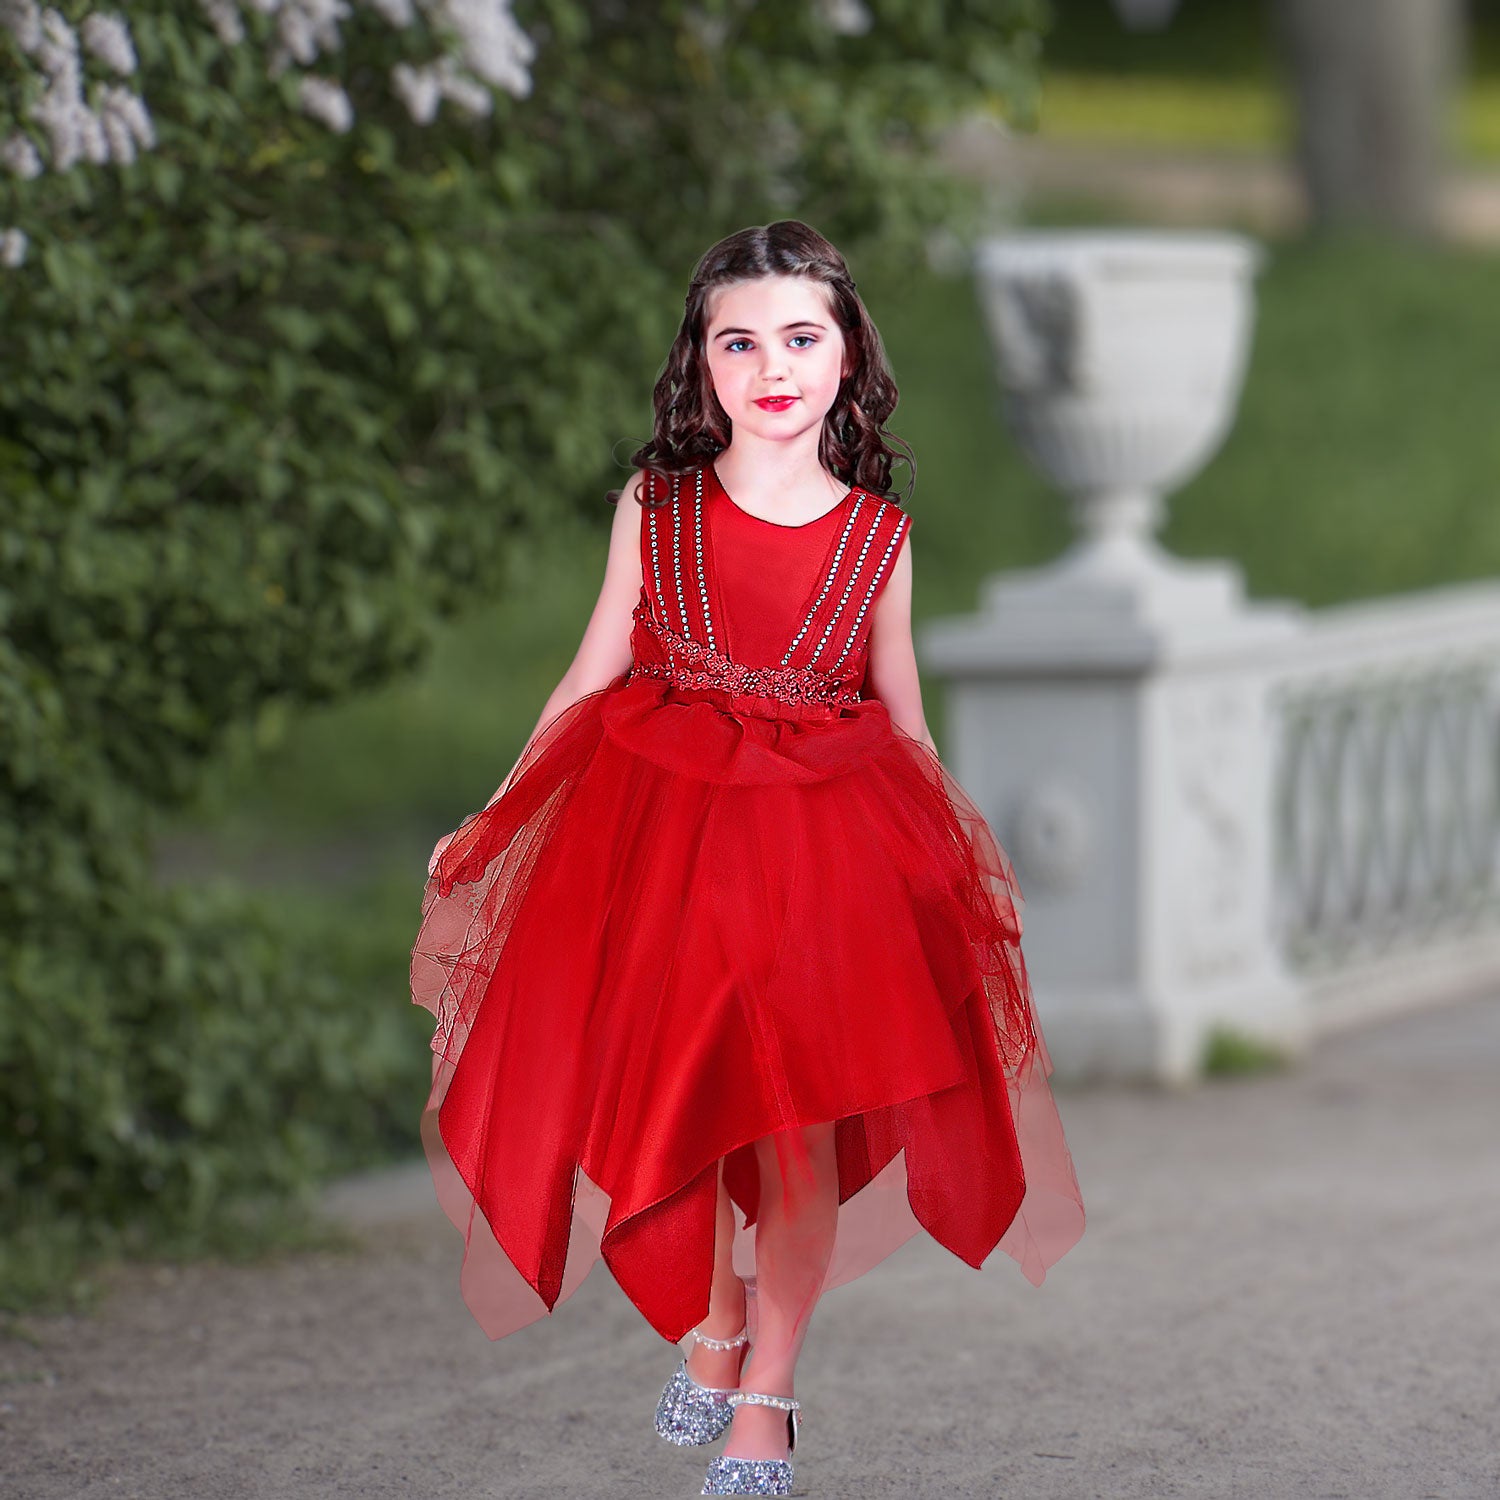 Girls' Red Hanky Dress